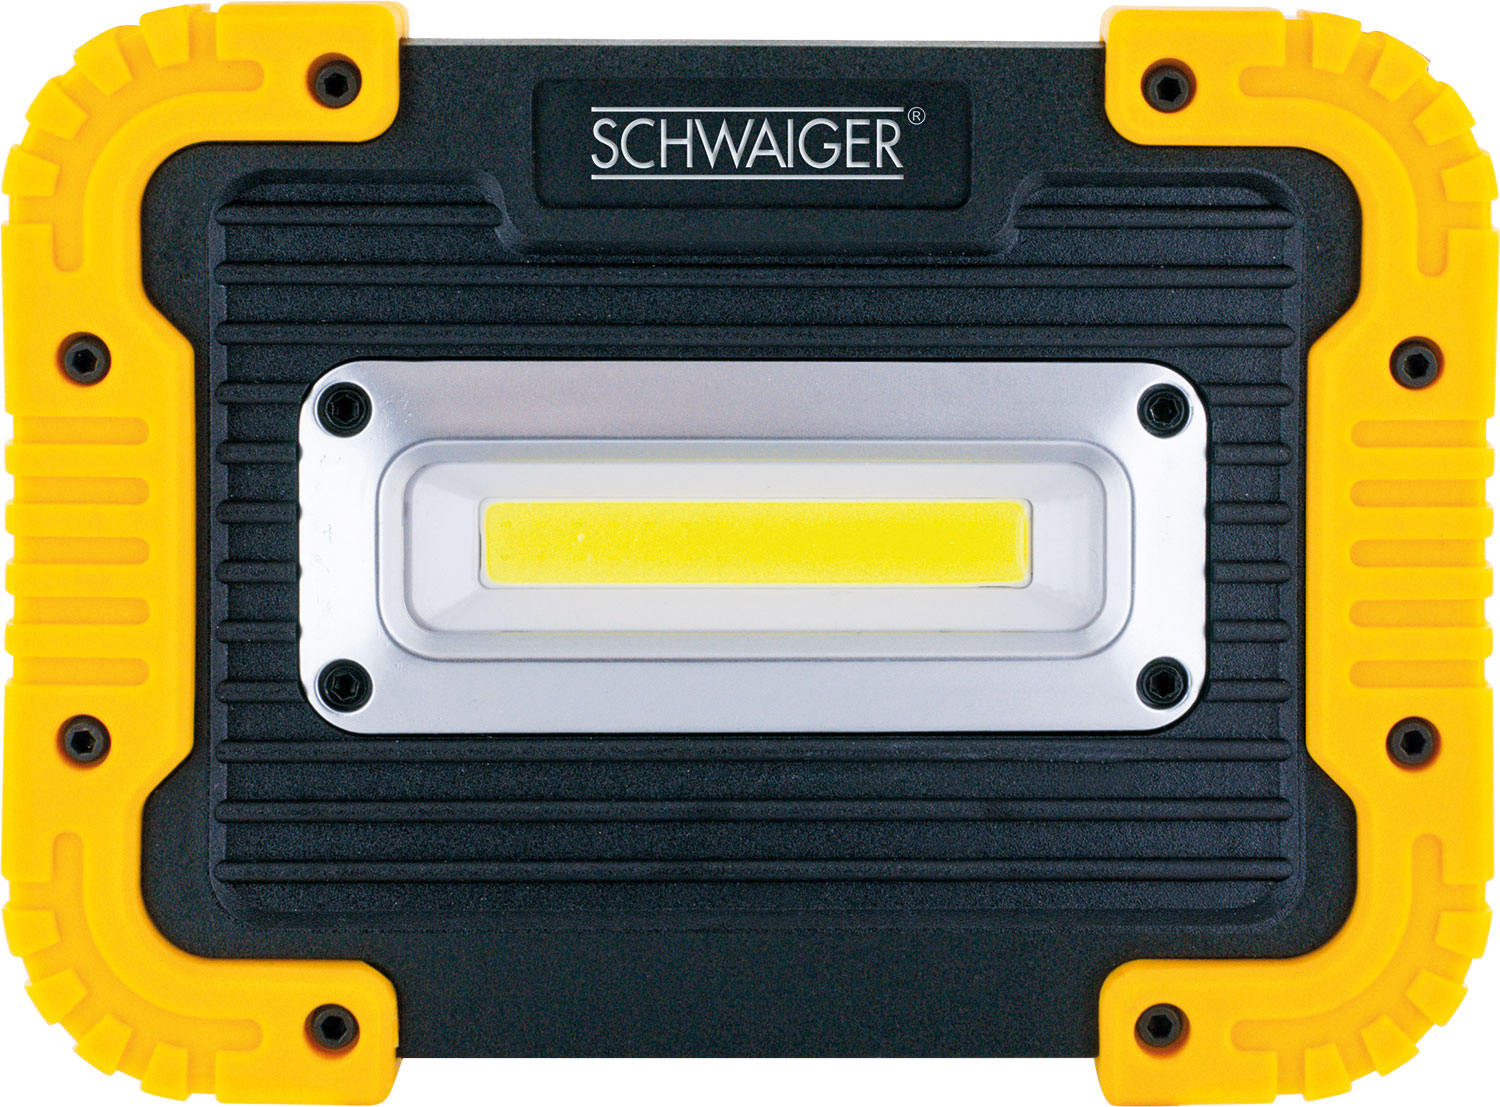 SCHWAIGER -WLED10 531- Multifunktionsstrahler